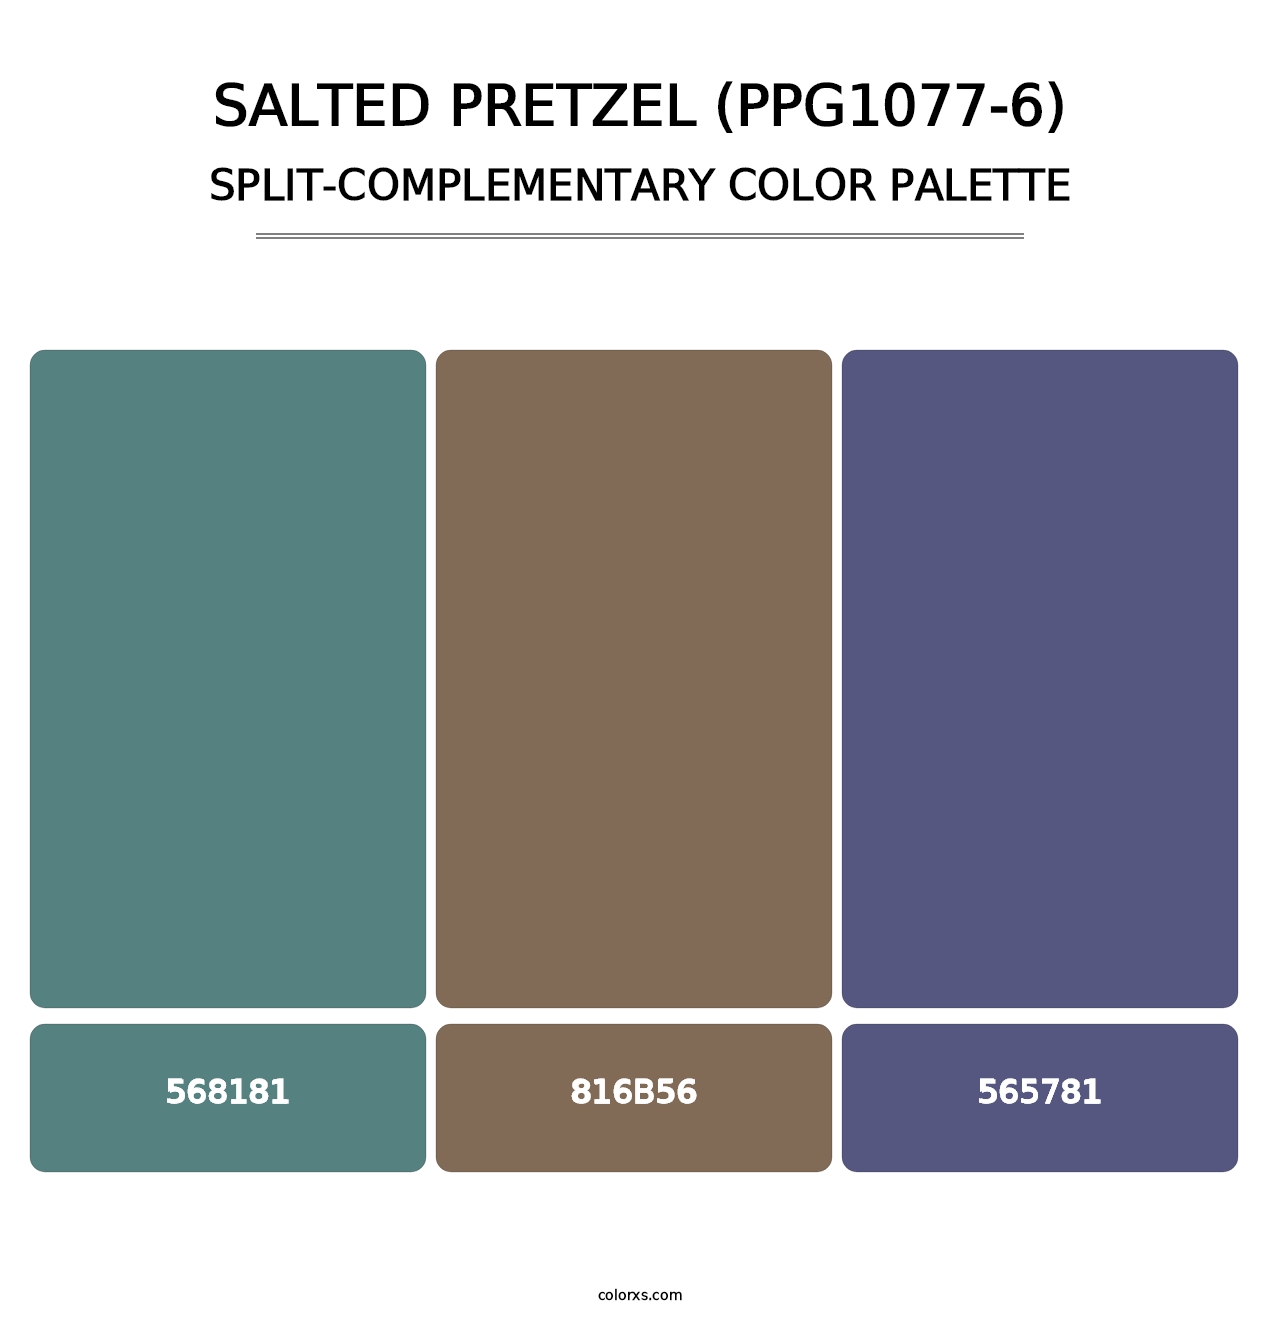 Salted Pretzel (PPG1077-6) - Split-Complementary Color Palette